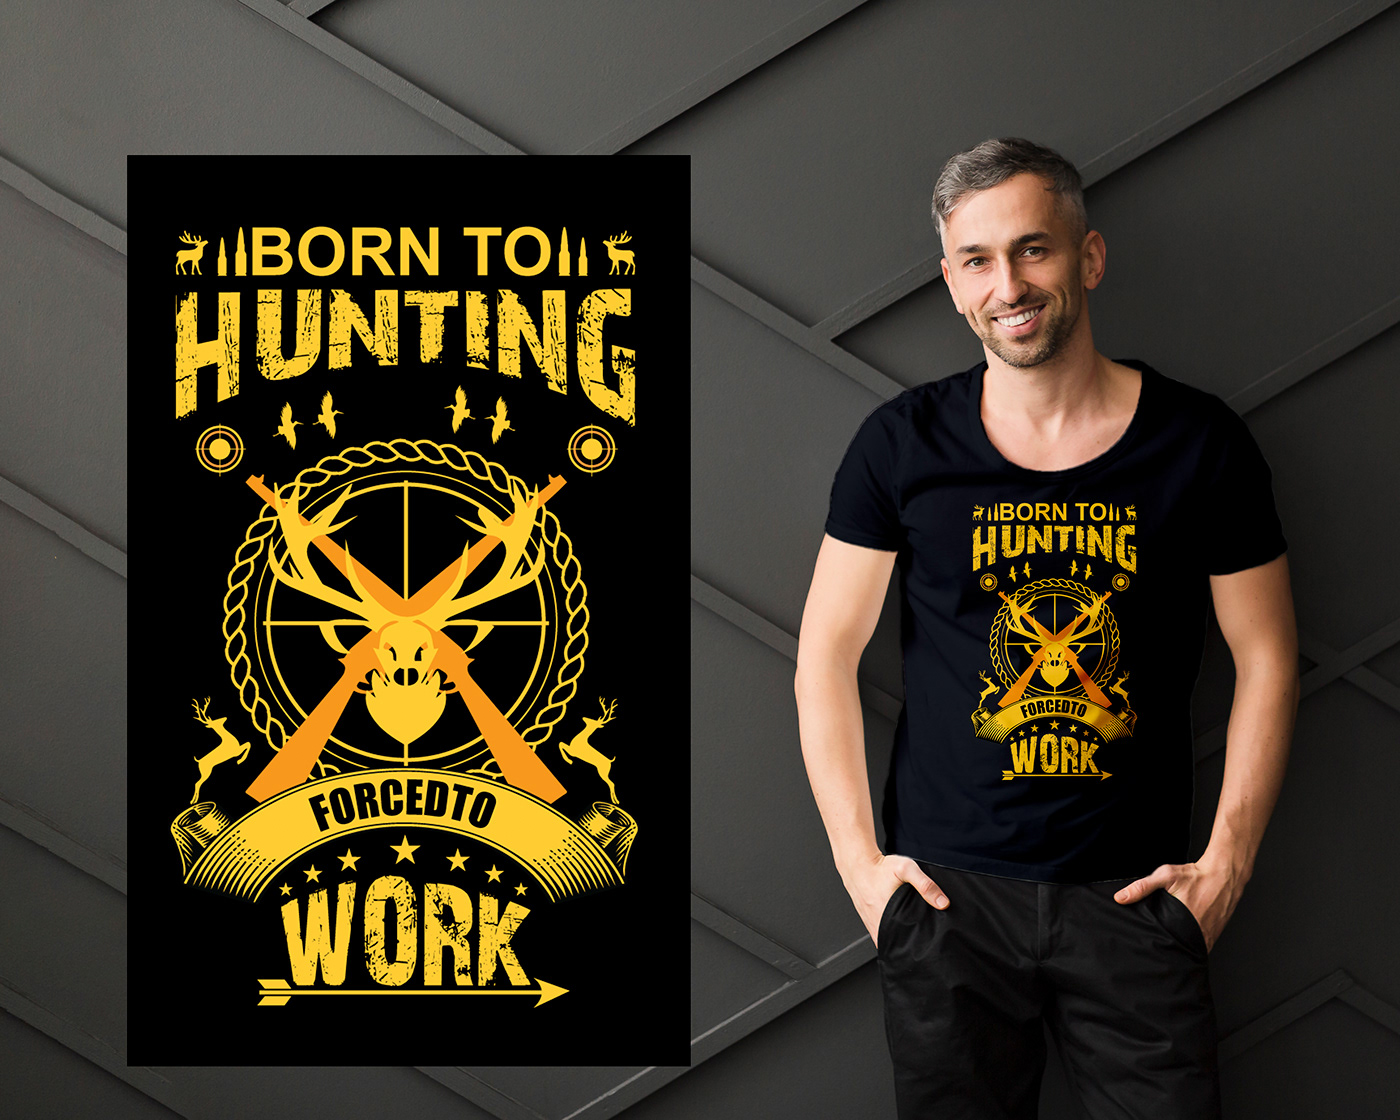 t-shirt Hunting T-shirt Design Hunting T-Shirt Design tshirt t-shirt illustration Tshirt Design Hunting t shirt design Hunting T-shirt